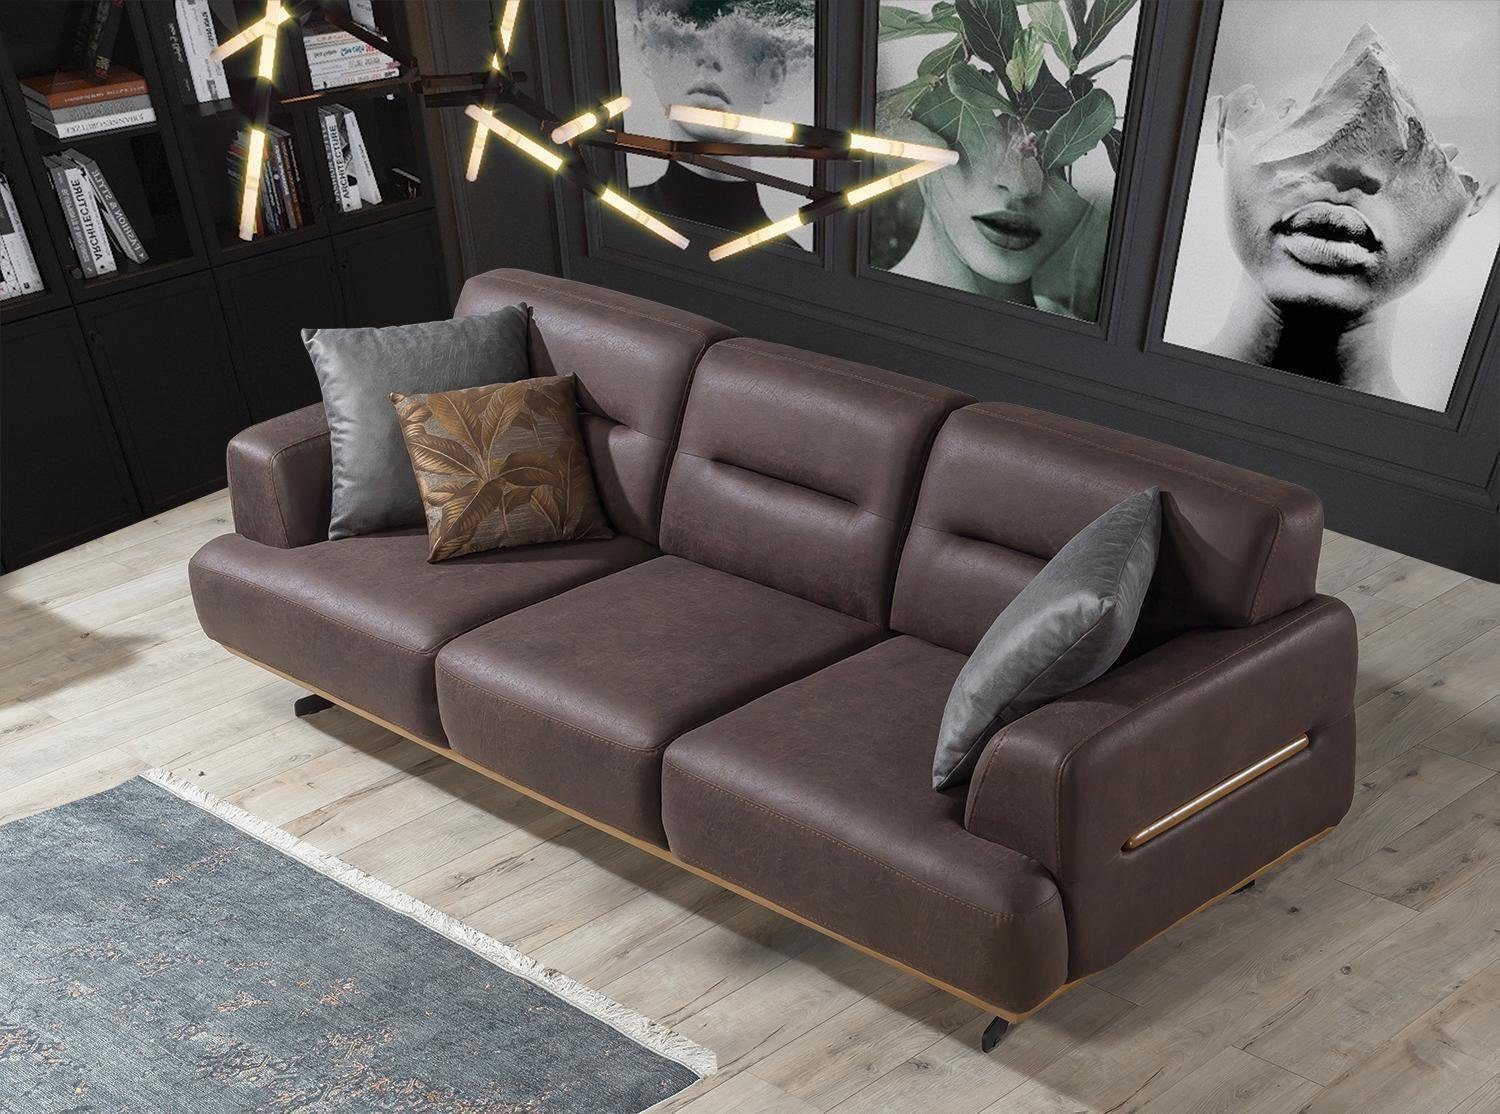 JVmoebel Sofa Braun Sofa Wohnzimmer Couch Dreisitzer Luxus Einrichtung Polster, 1 Teile, Made in Europa